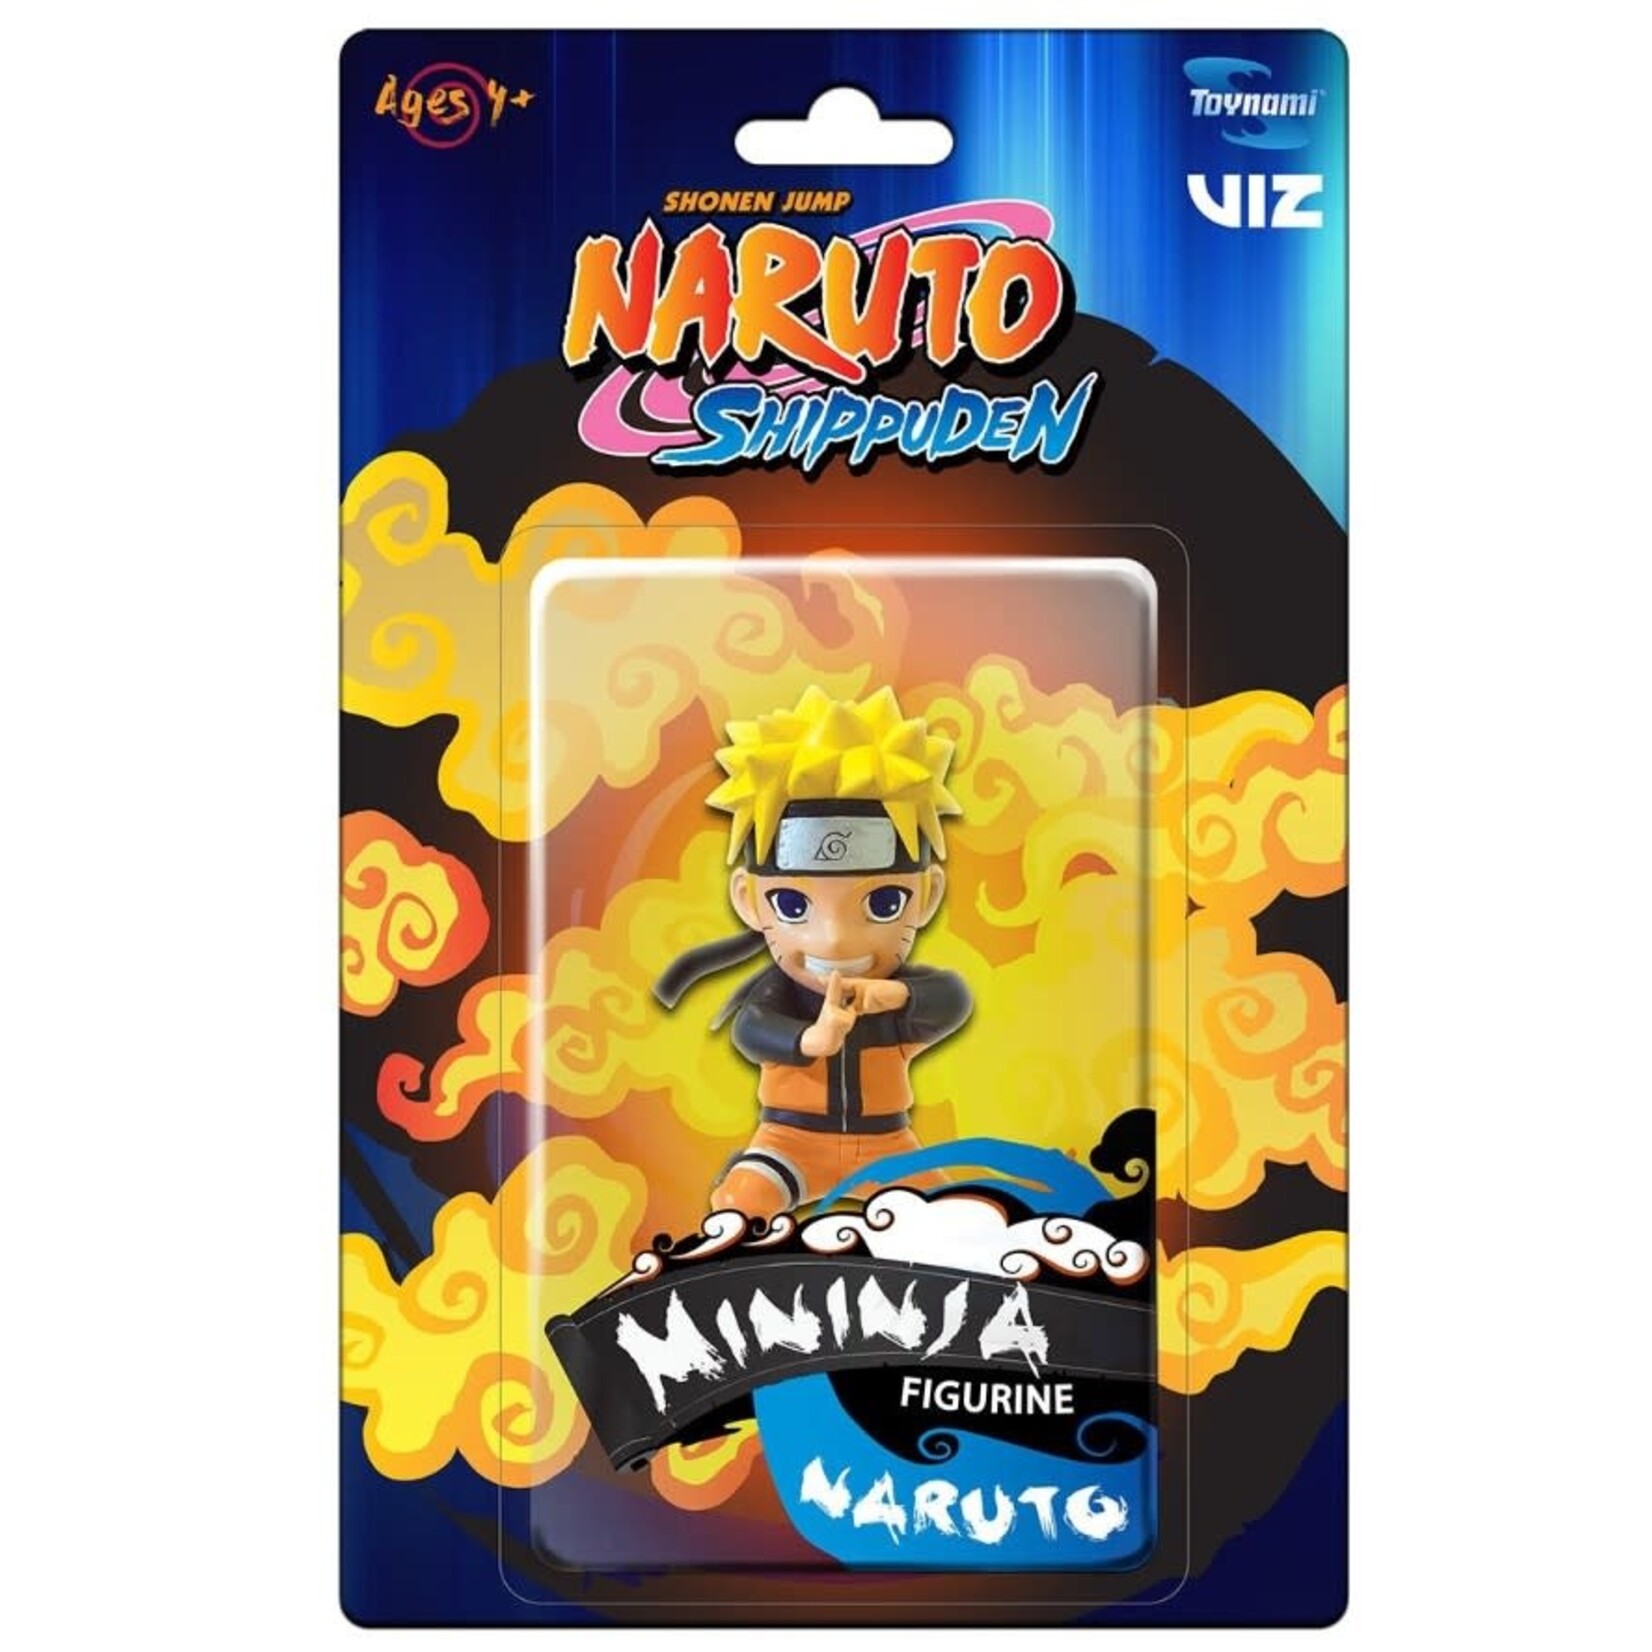 Naruto: Shippuden Mininja Series 1 Mini-Figure - Naruto